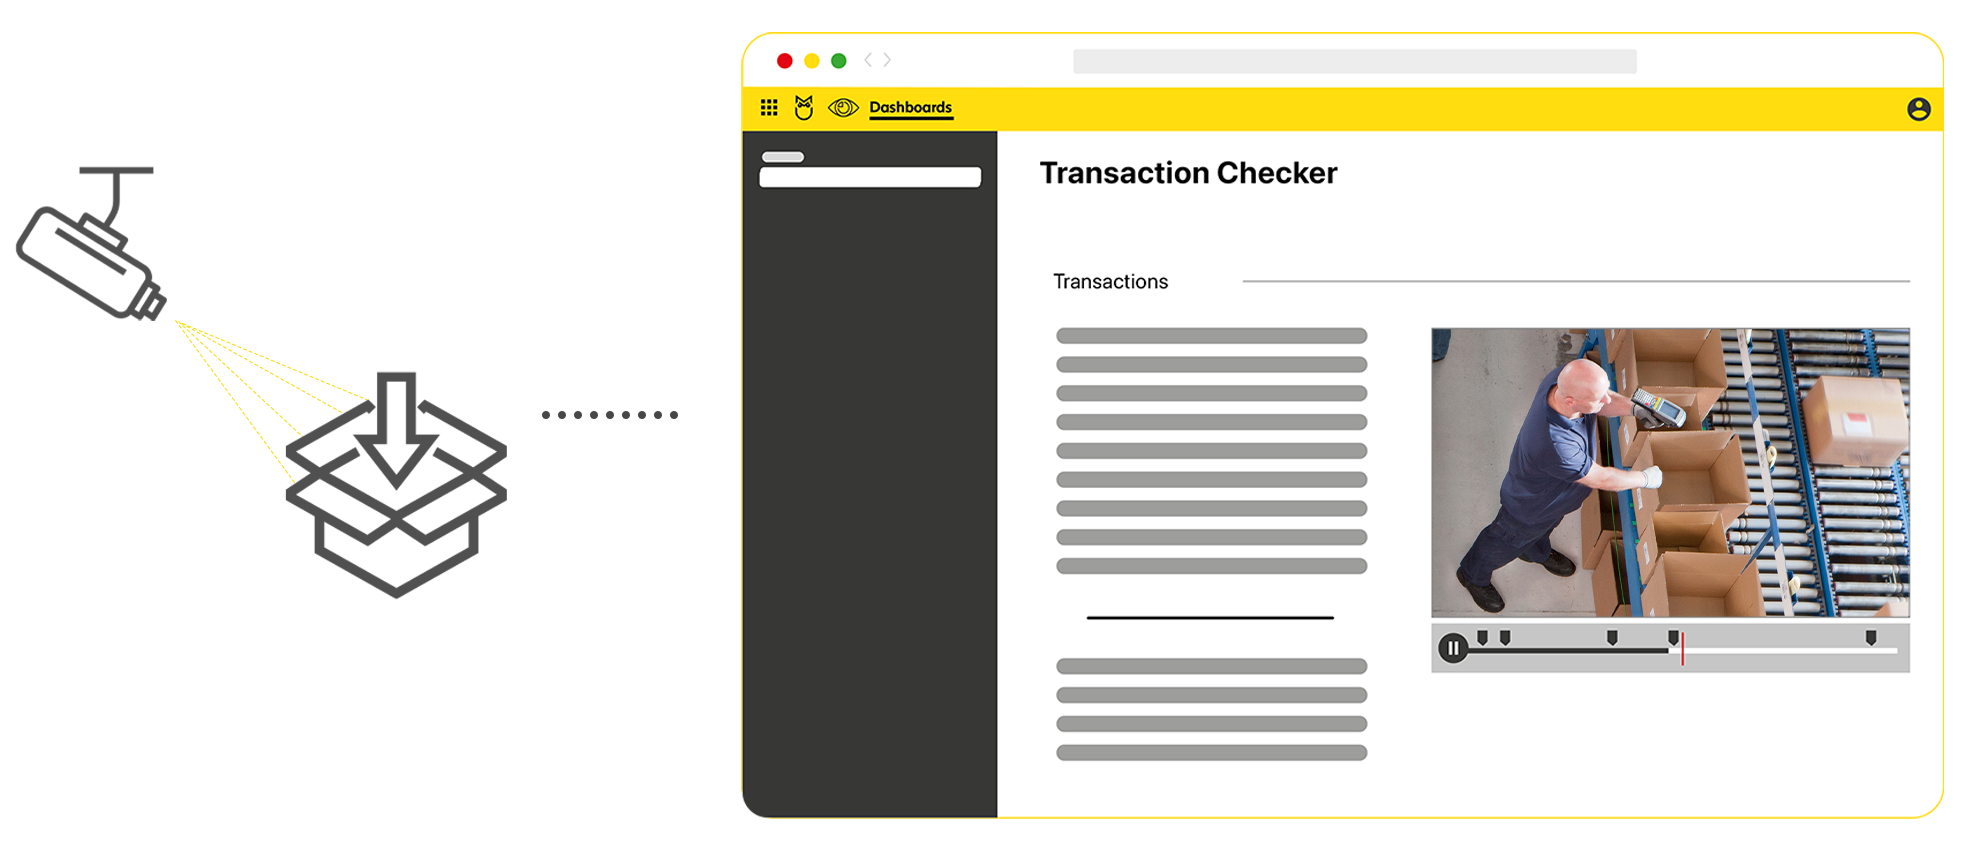 Transaction Checker